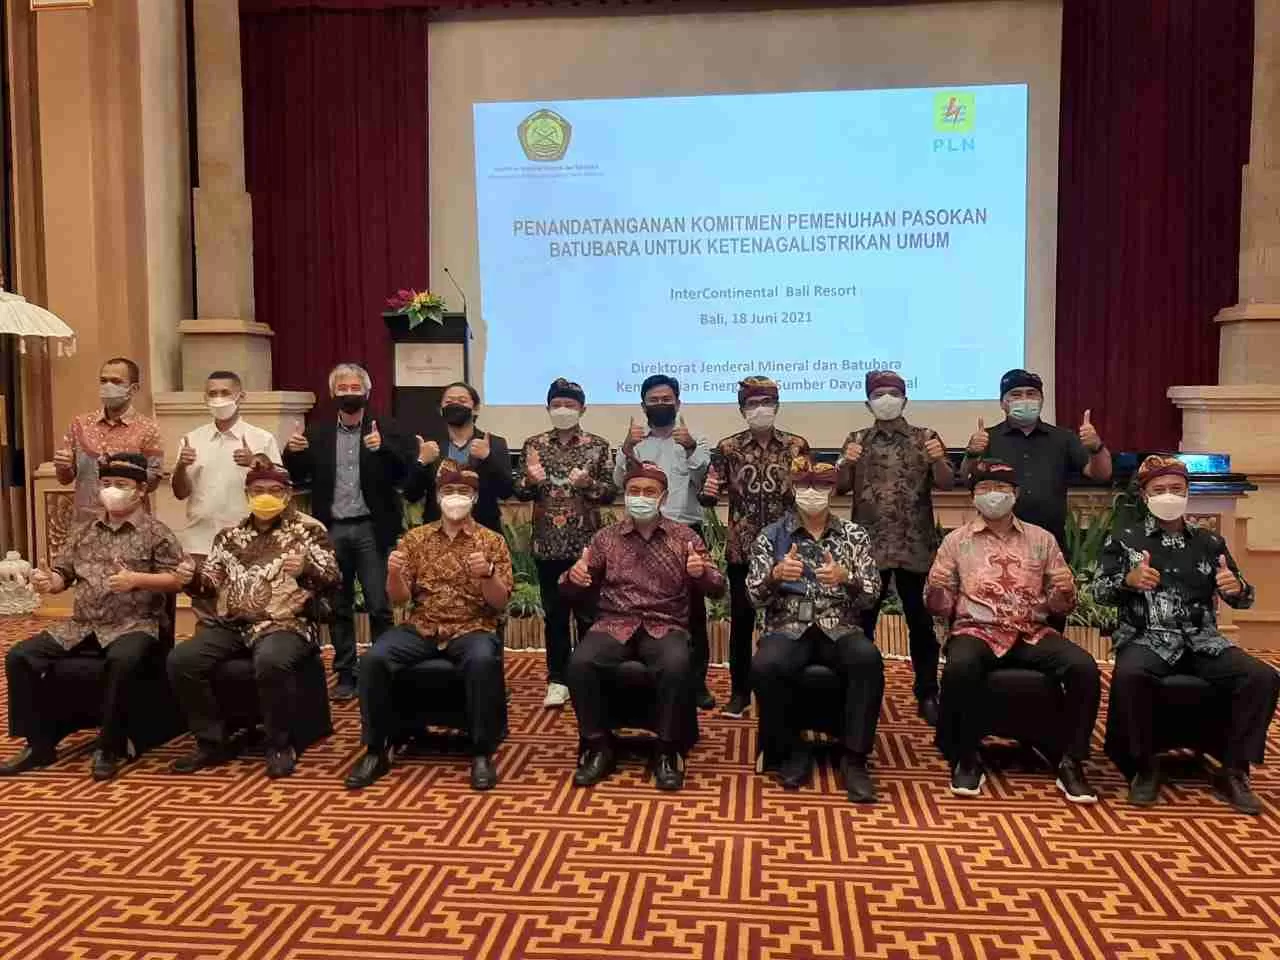 DUKUNGAN UNTUK PLN: Penandatanganan Komitmen Pemenuhan Pasokan Batu Bara untuk Ketenagalistrikan Umum yang diselenggarakan di Bali (18/6).